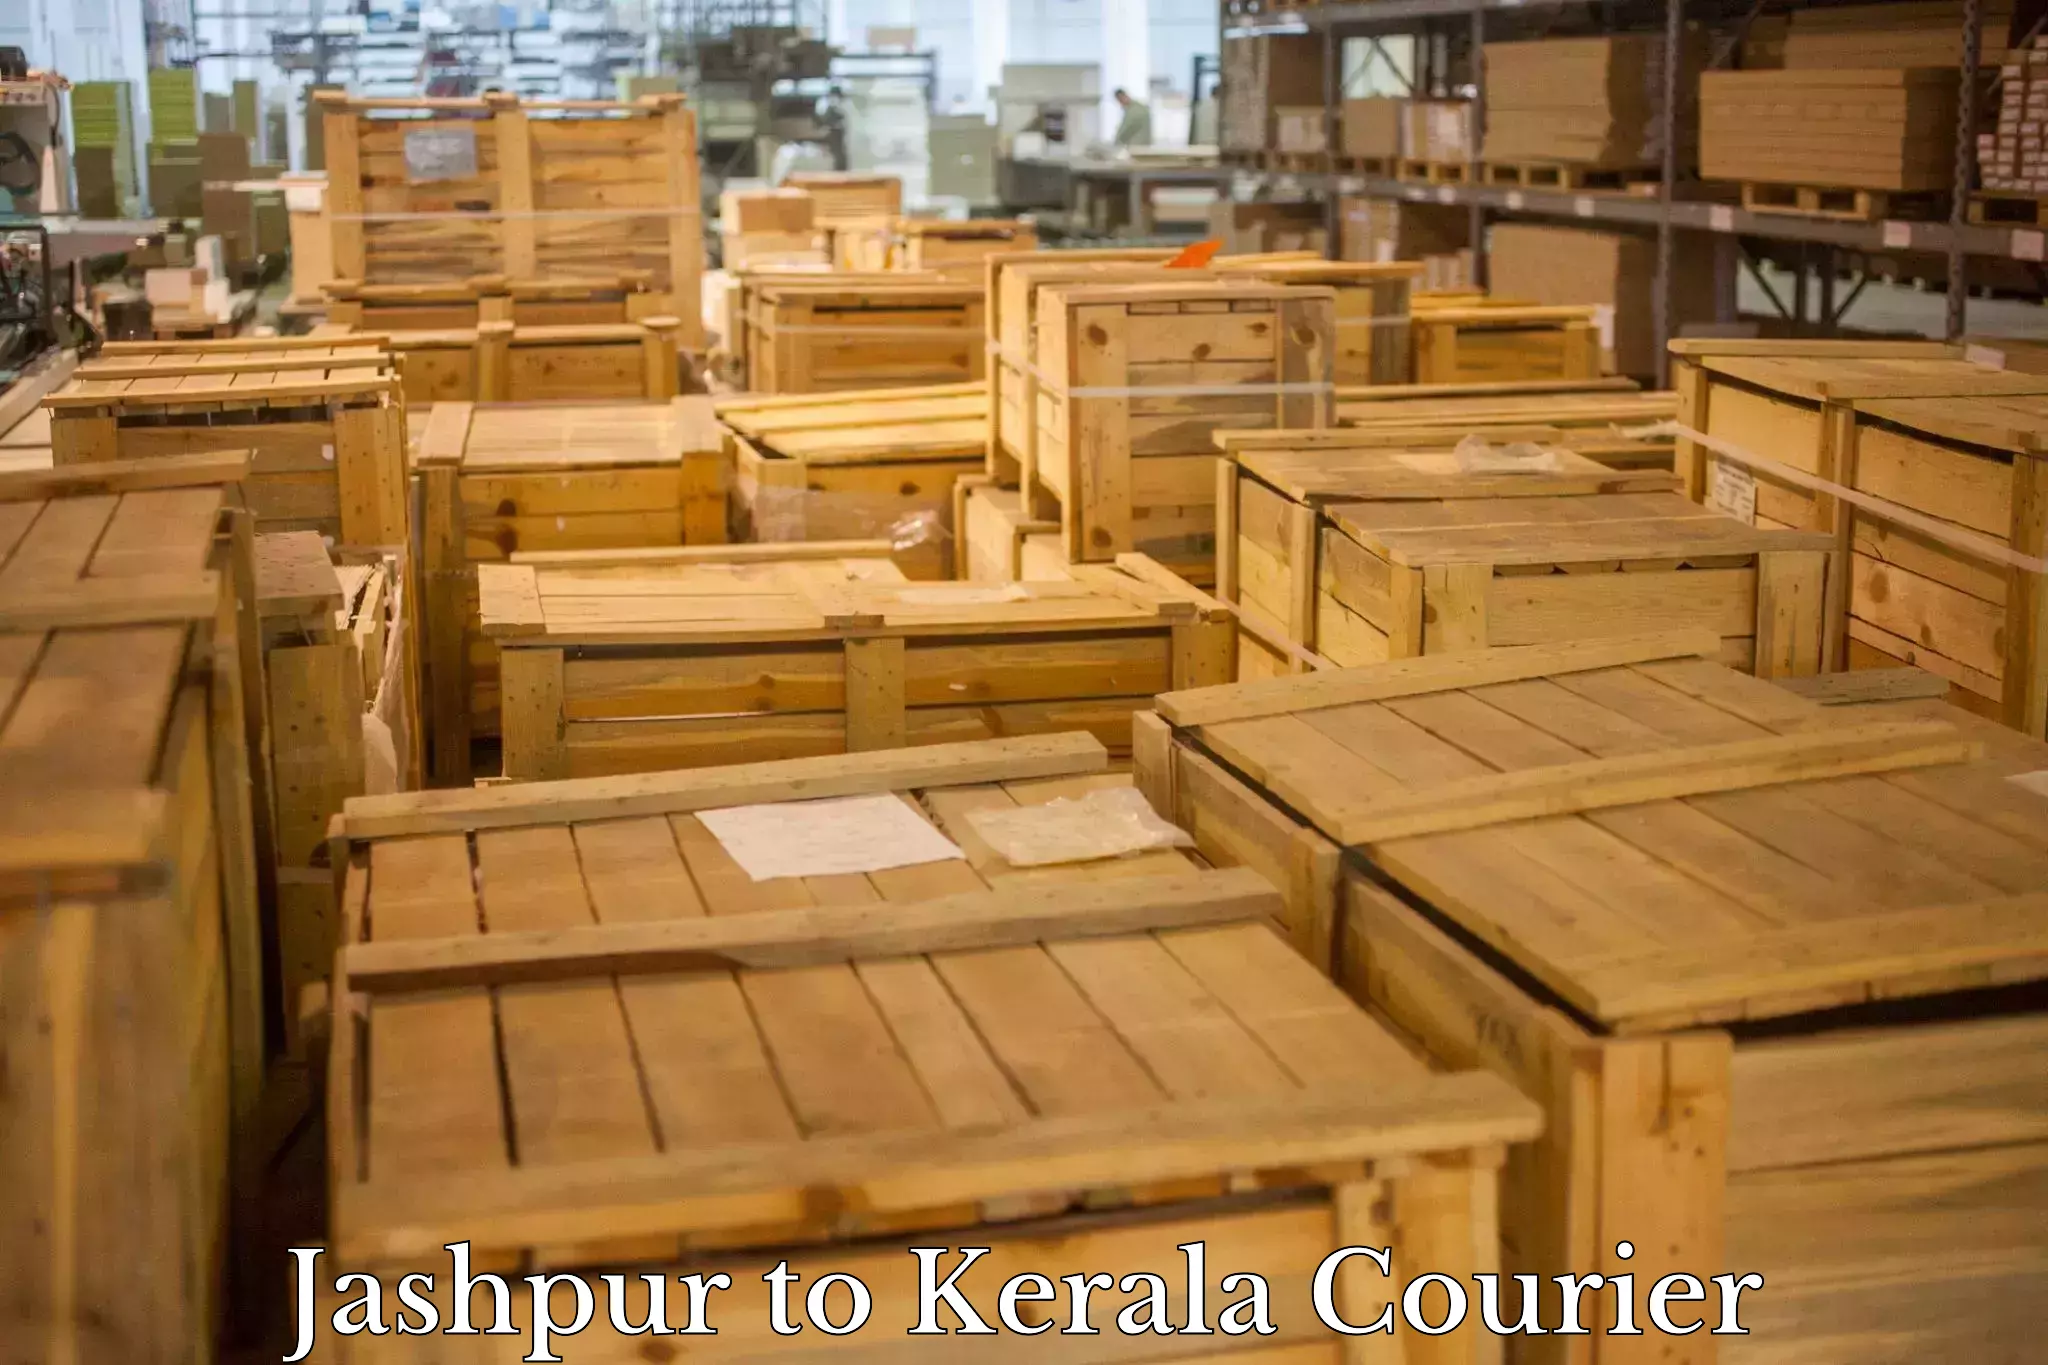 Smart logistics strategies in Jashpur to Kattappana